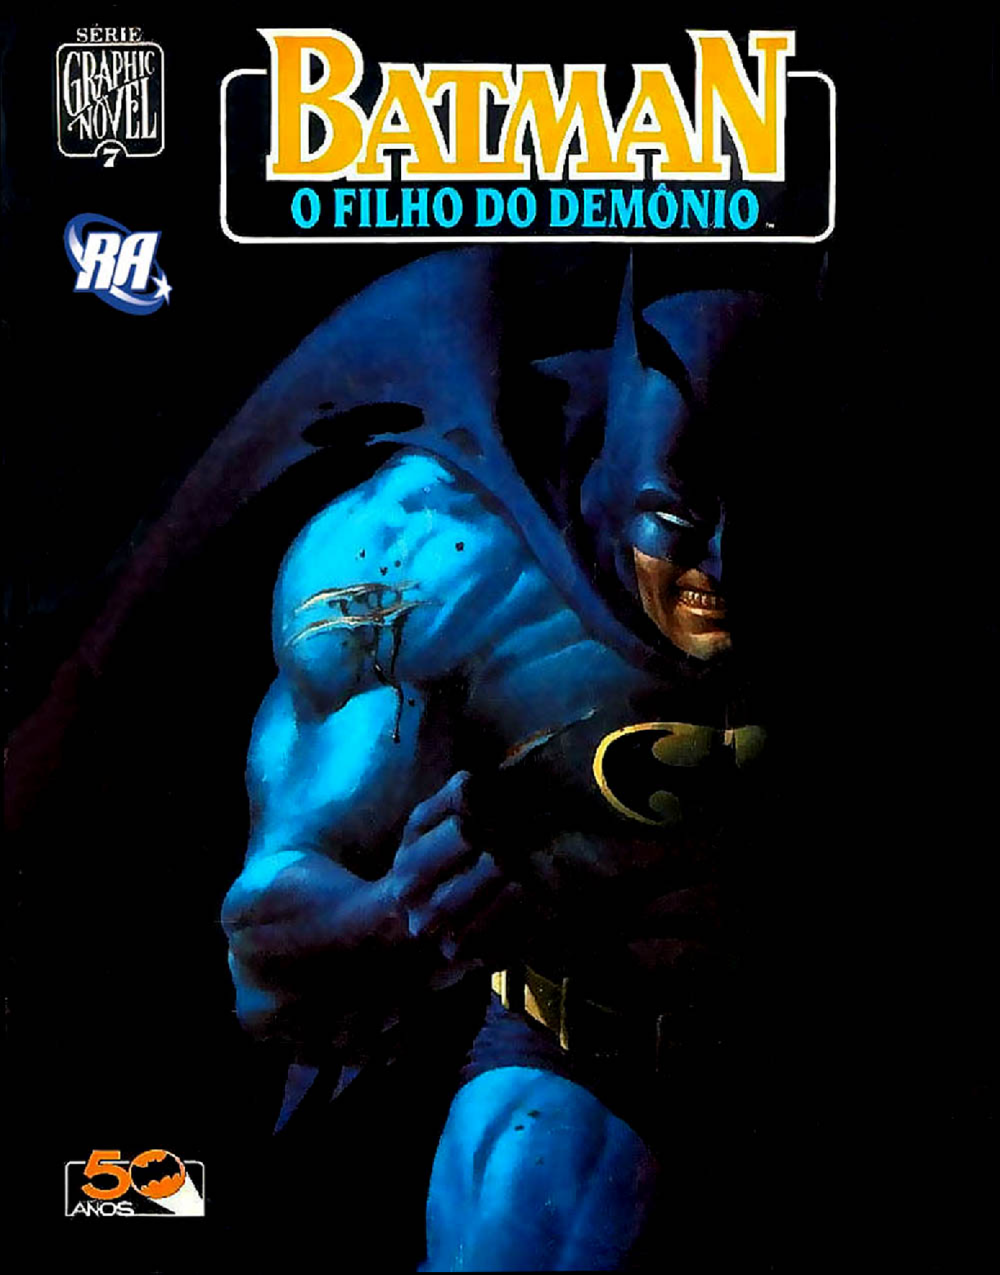 GRAPHIC NOVEL 07 - BATMAN - O FILHO DO DEMÔNIO - Baixar PDF de 